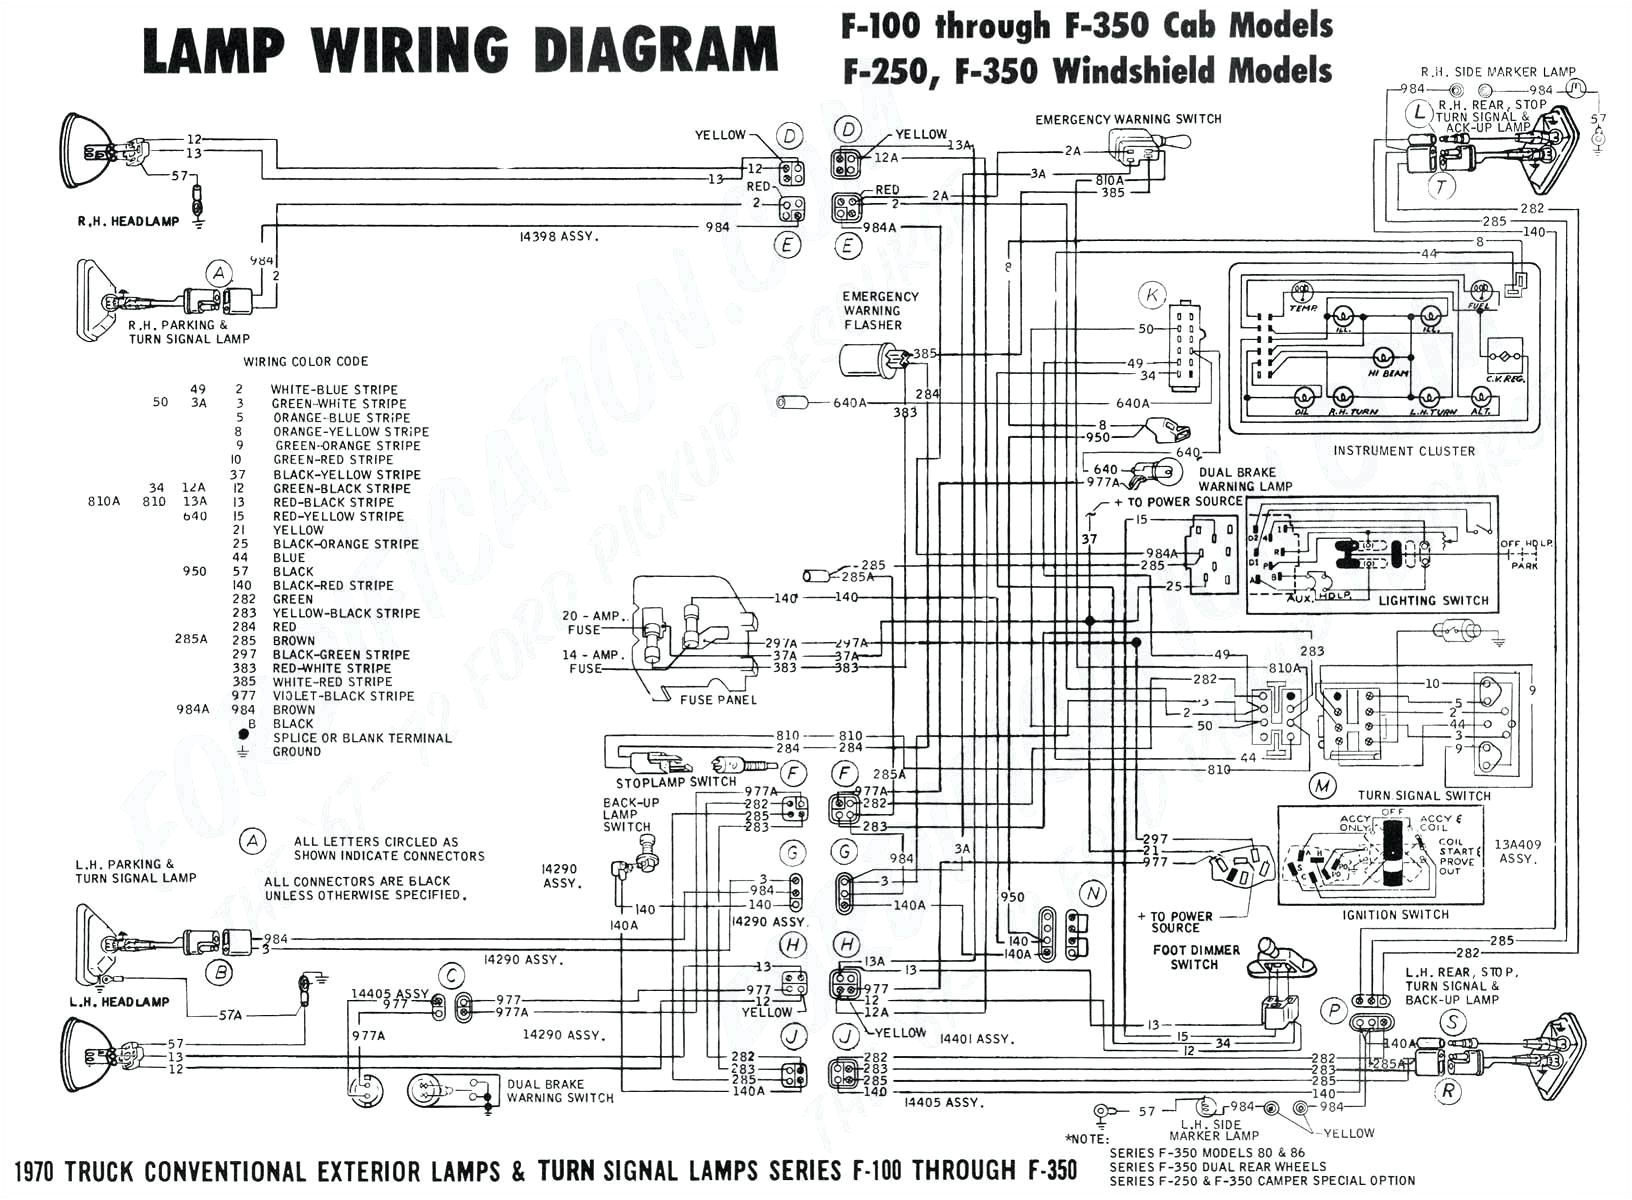 1995 dodge ram 1500 fuse panel diagram wiring diagram toolbox 95 dodge ram 1500 starter wiring diagram